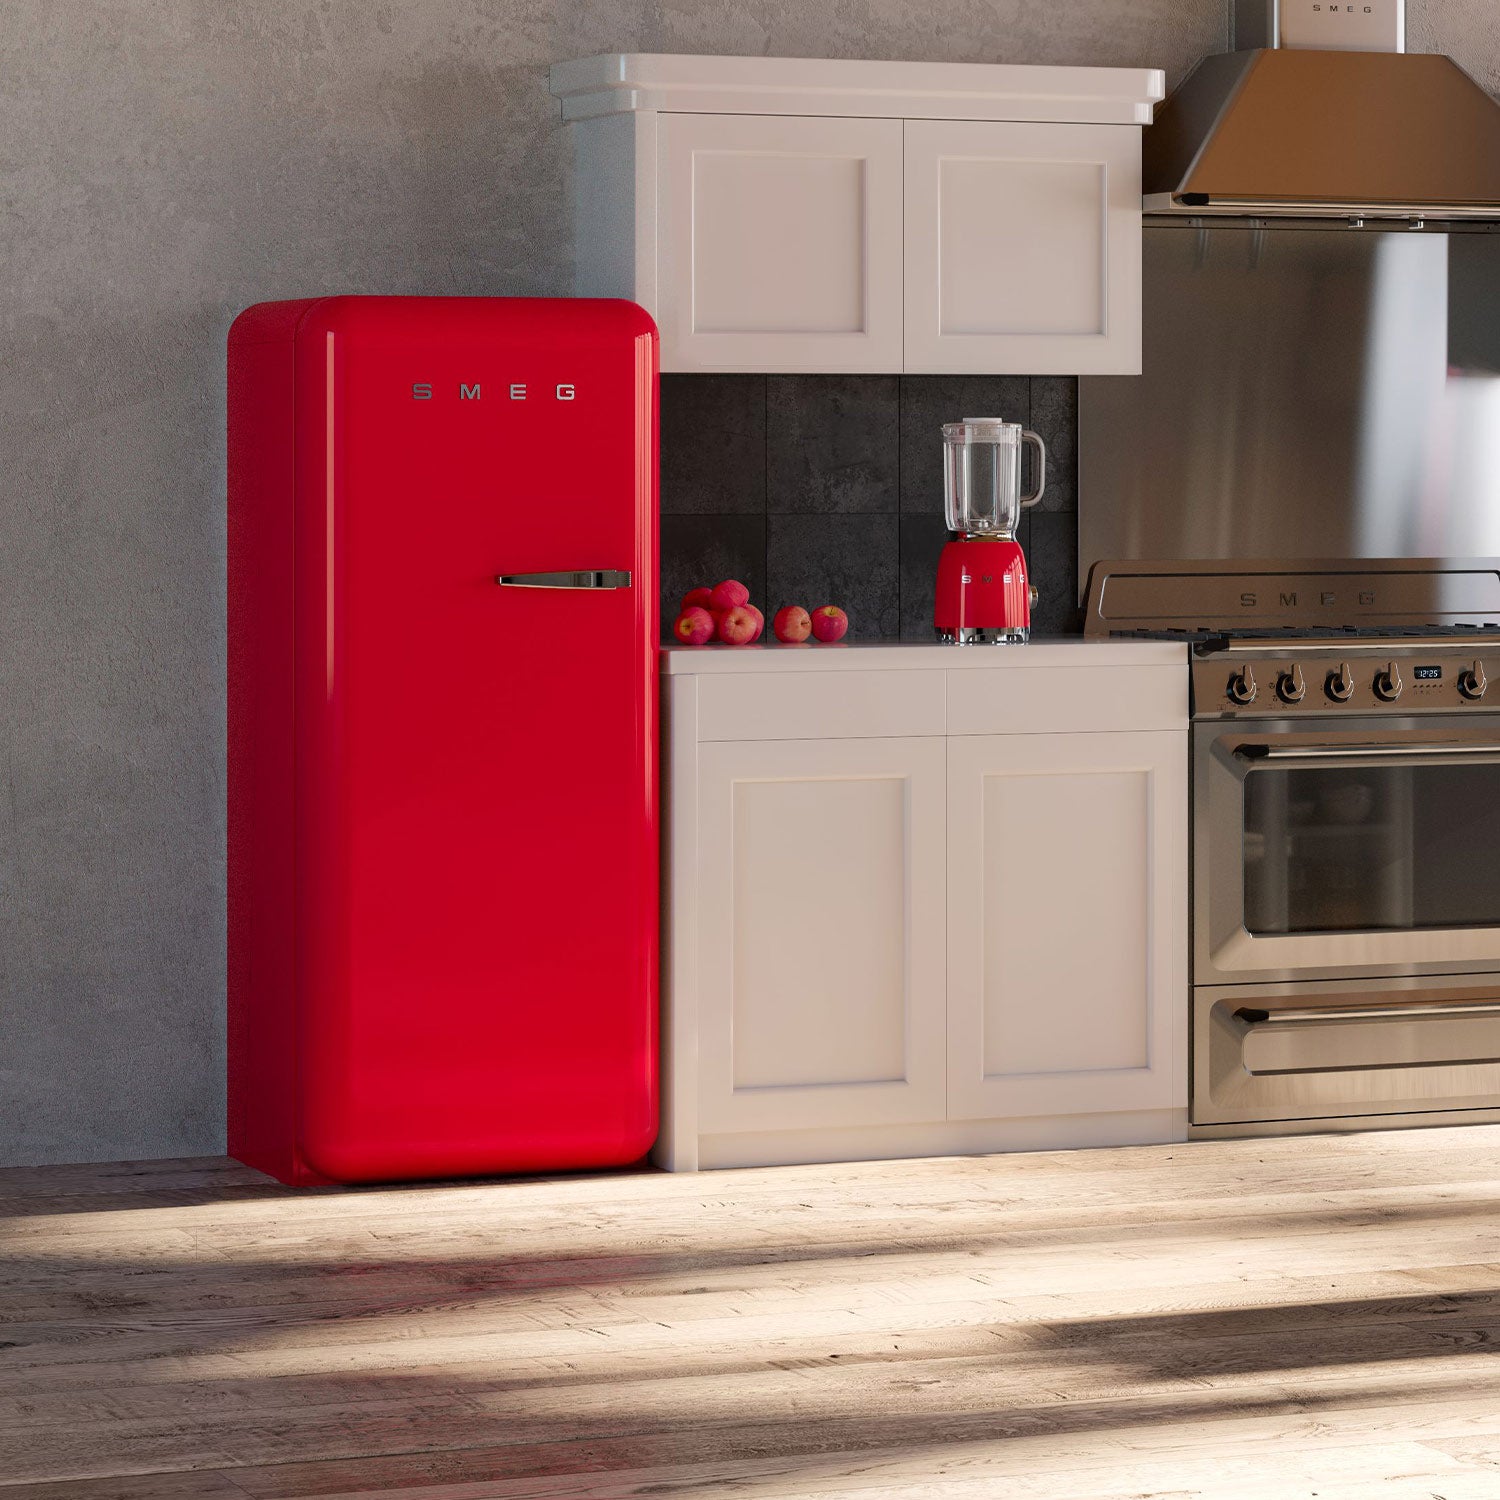 Smeg Retro Style 1.3 Cu. Ft. Red Compact Refrigerator